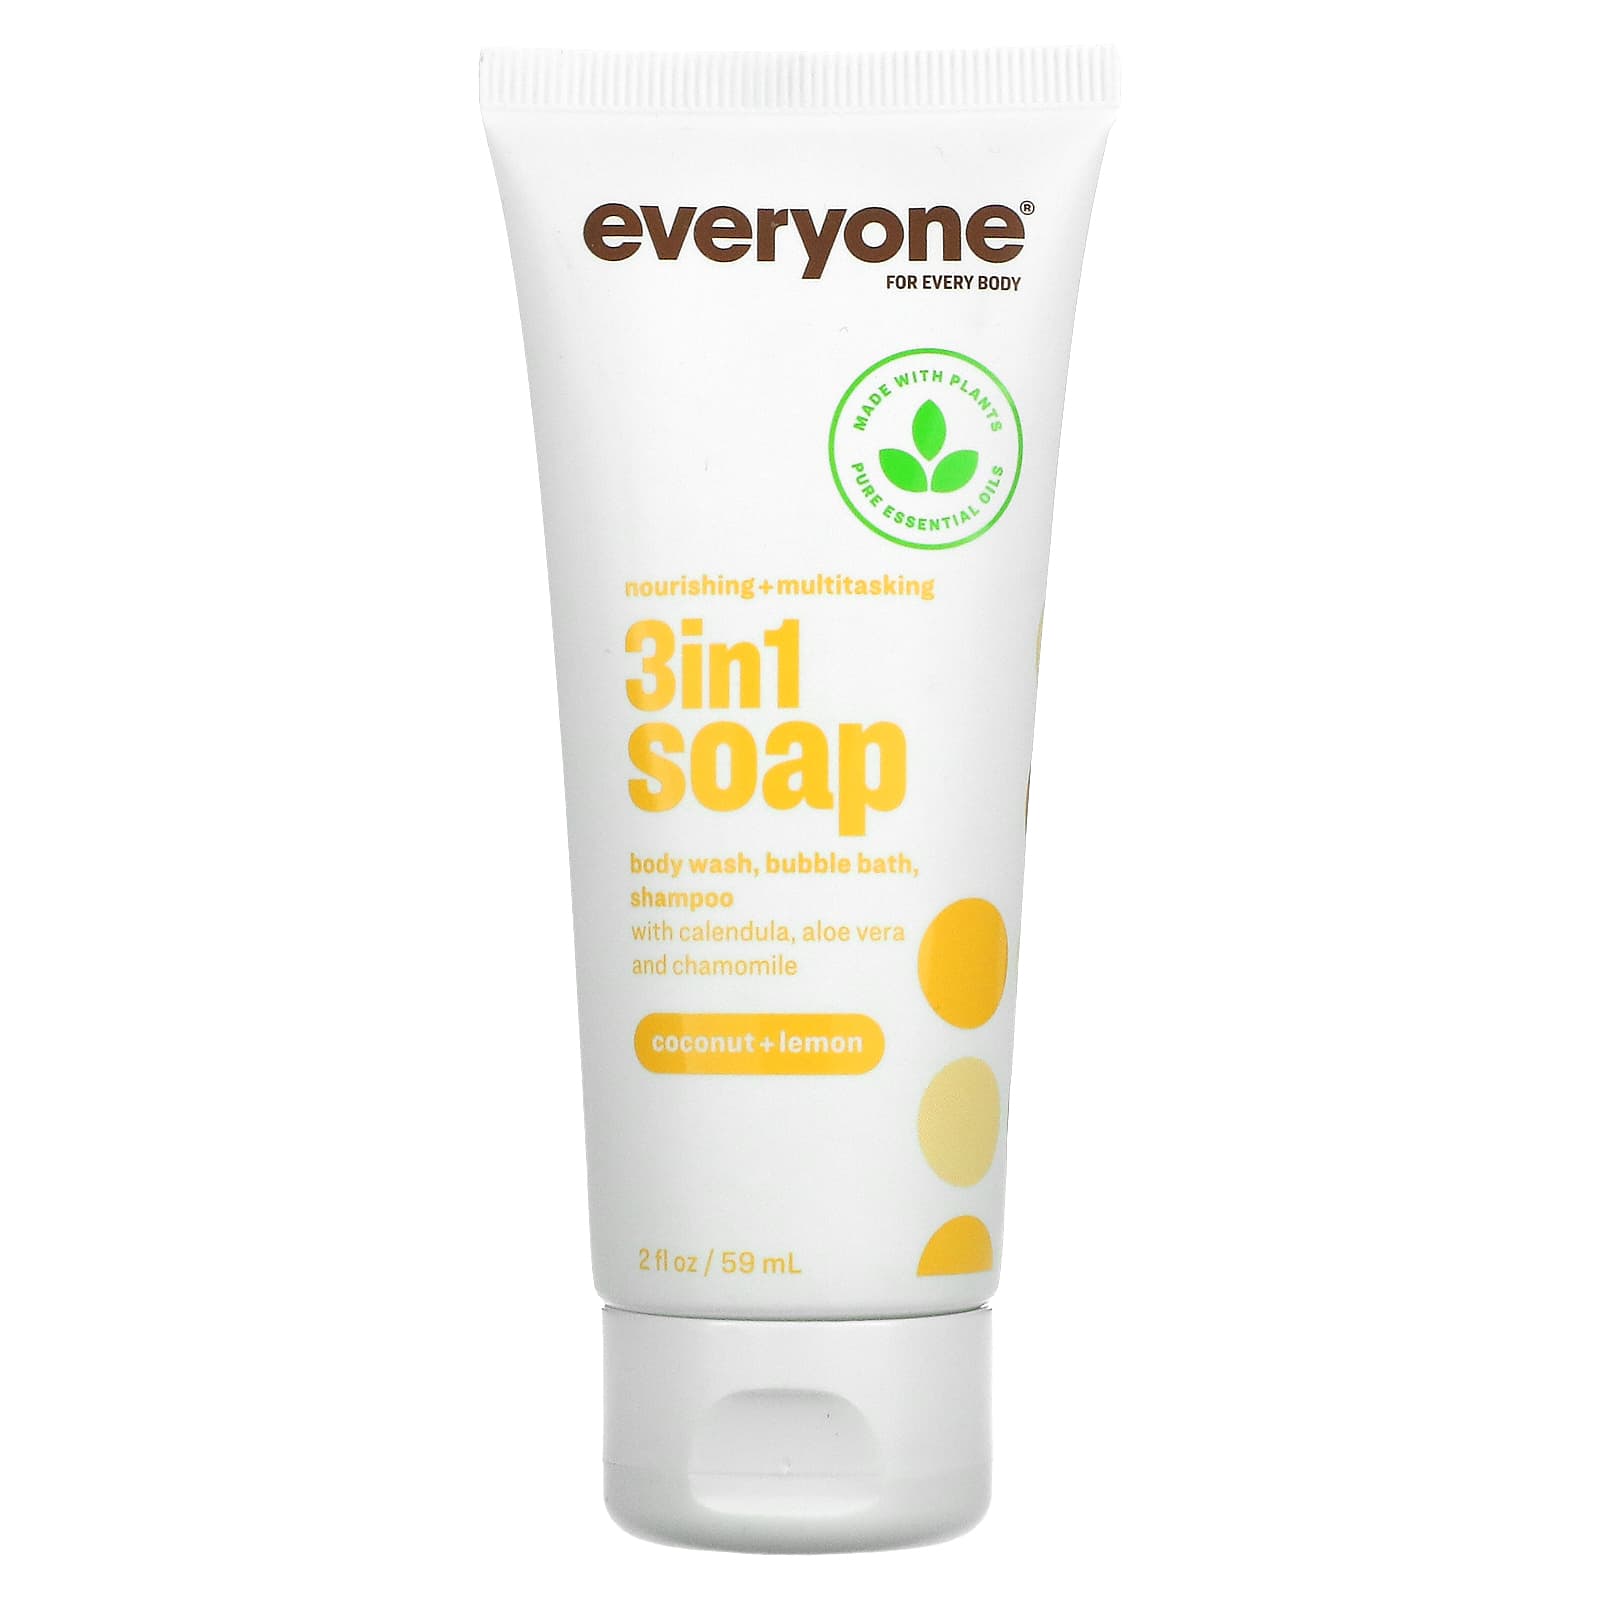 Everyone, Nourishing + Multitasking, 3 in 1 Soap, Body Wash 